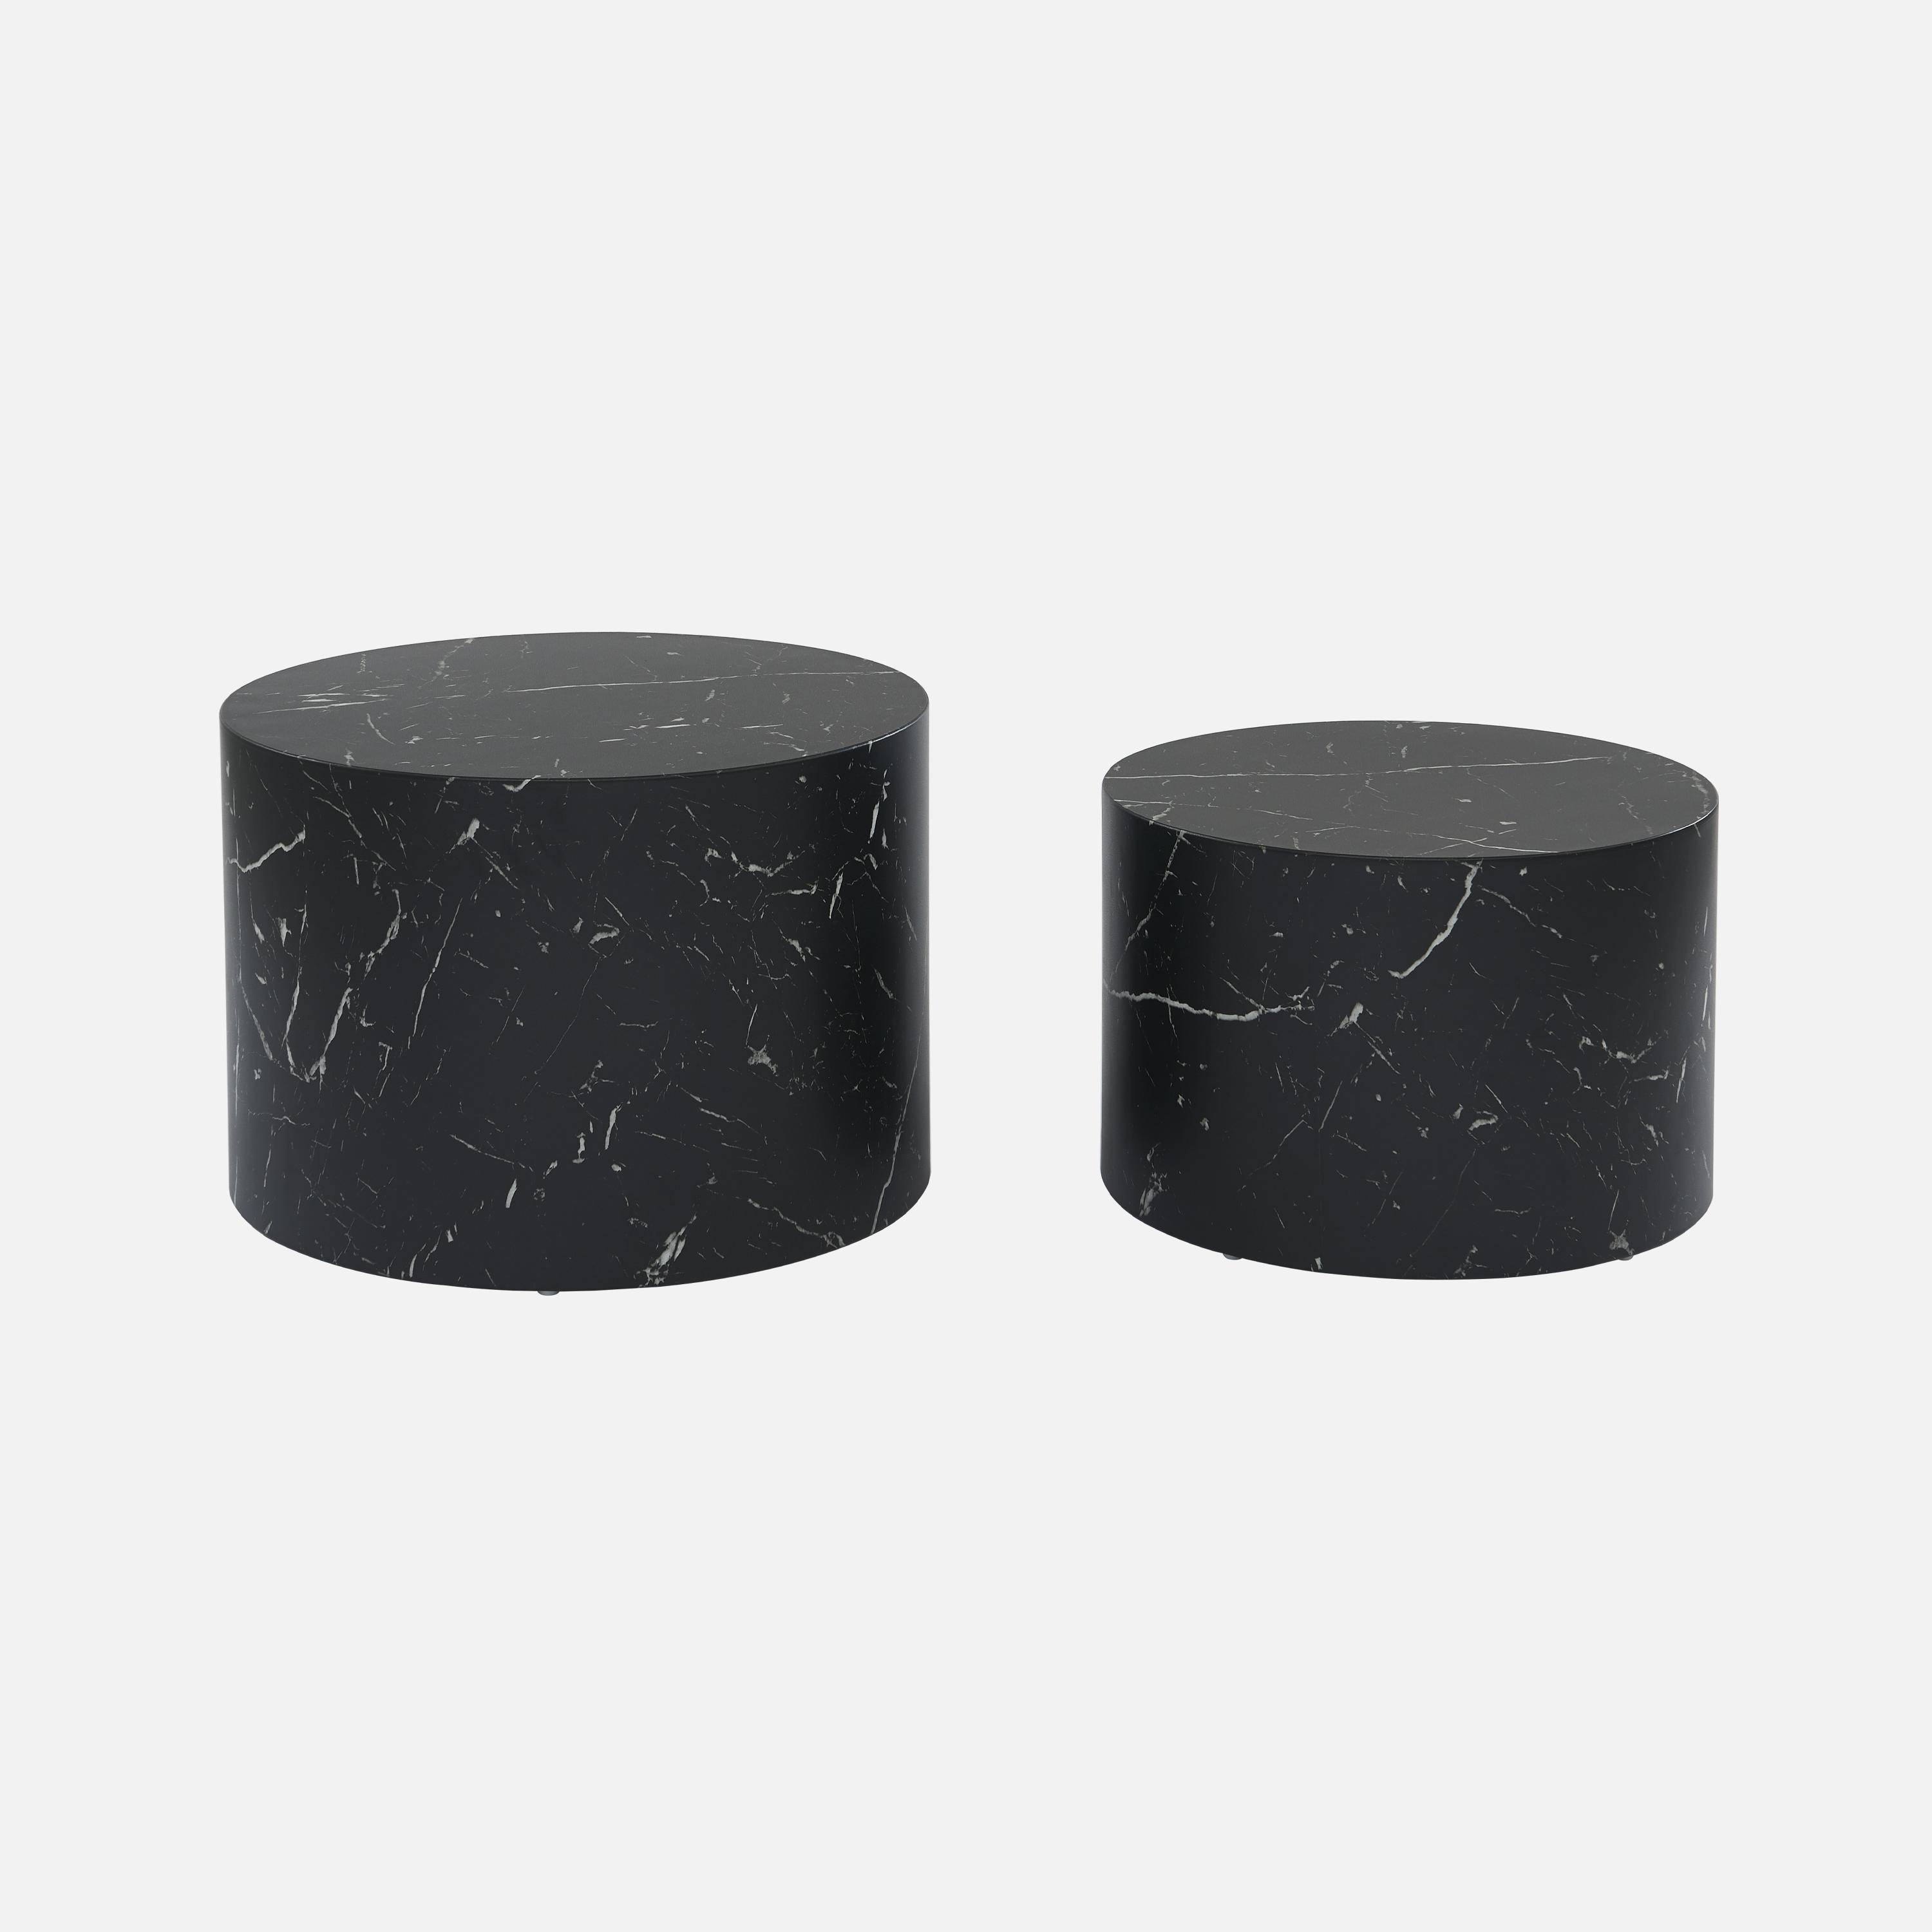 Lote de 2 mesas de centro redondas PAROS, efecto mármol negro, mesas nido Ø58 x H 40cm / Ø50 x H 33cm,sweeek,Photo4